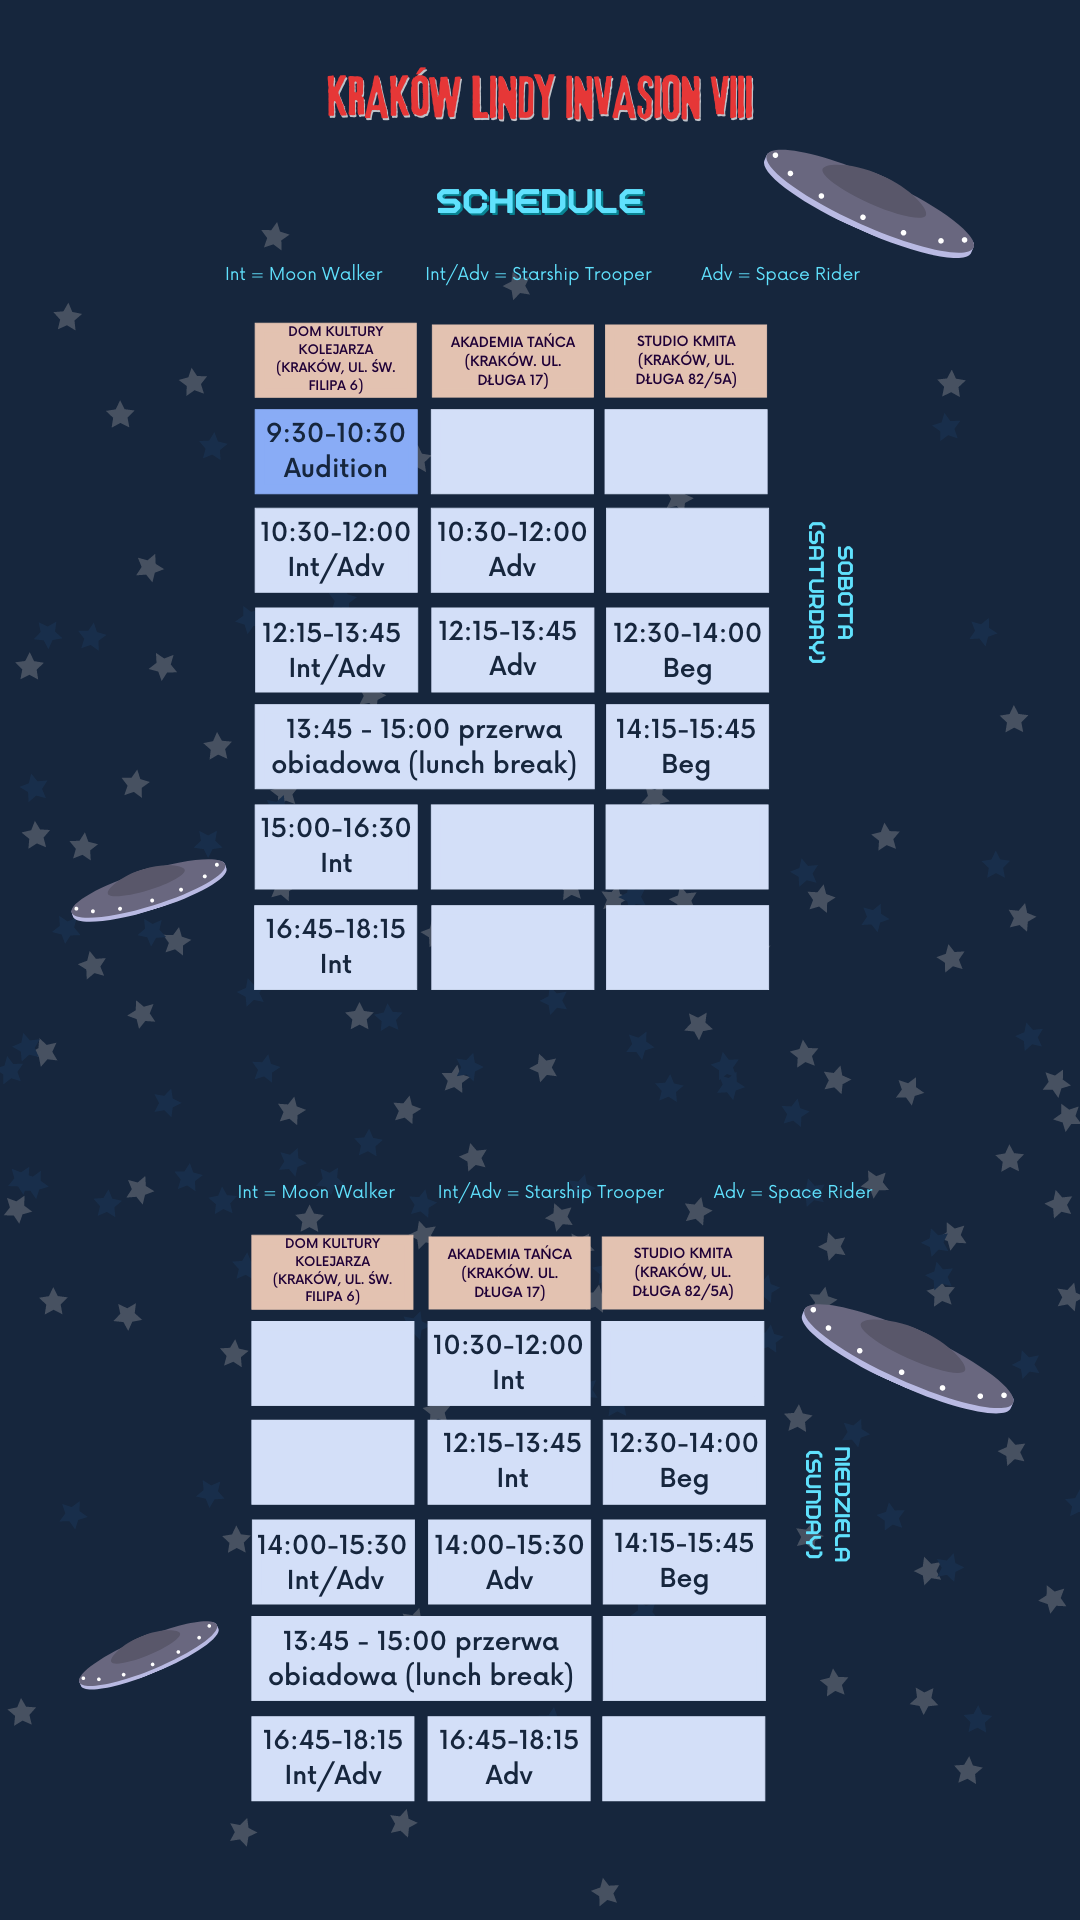 kli VIII schedule